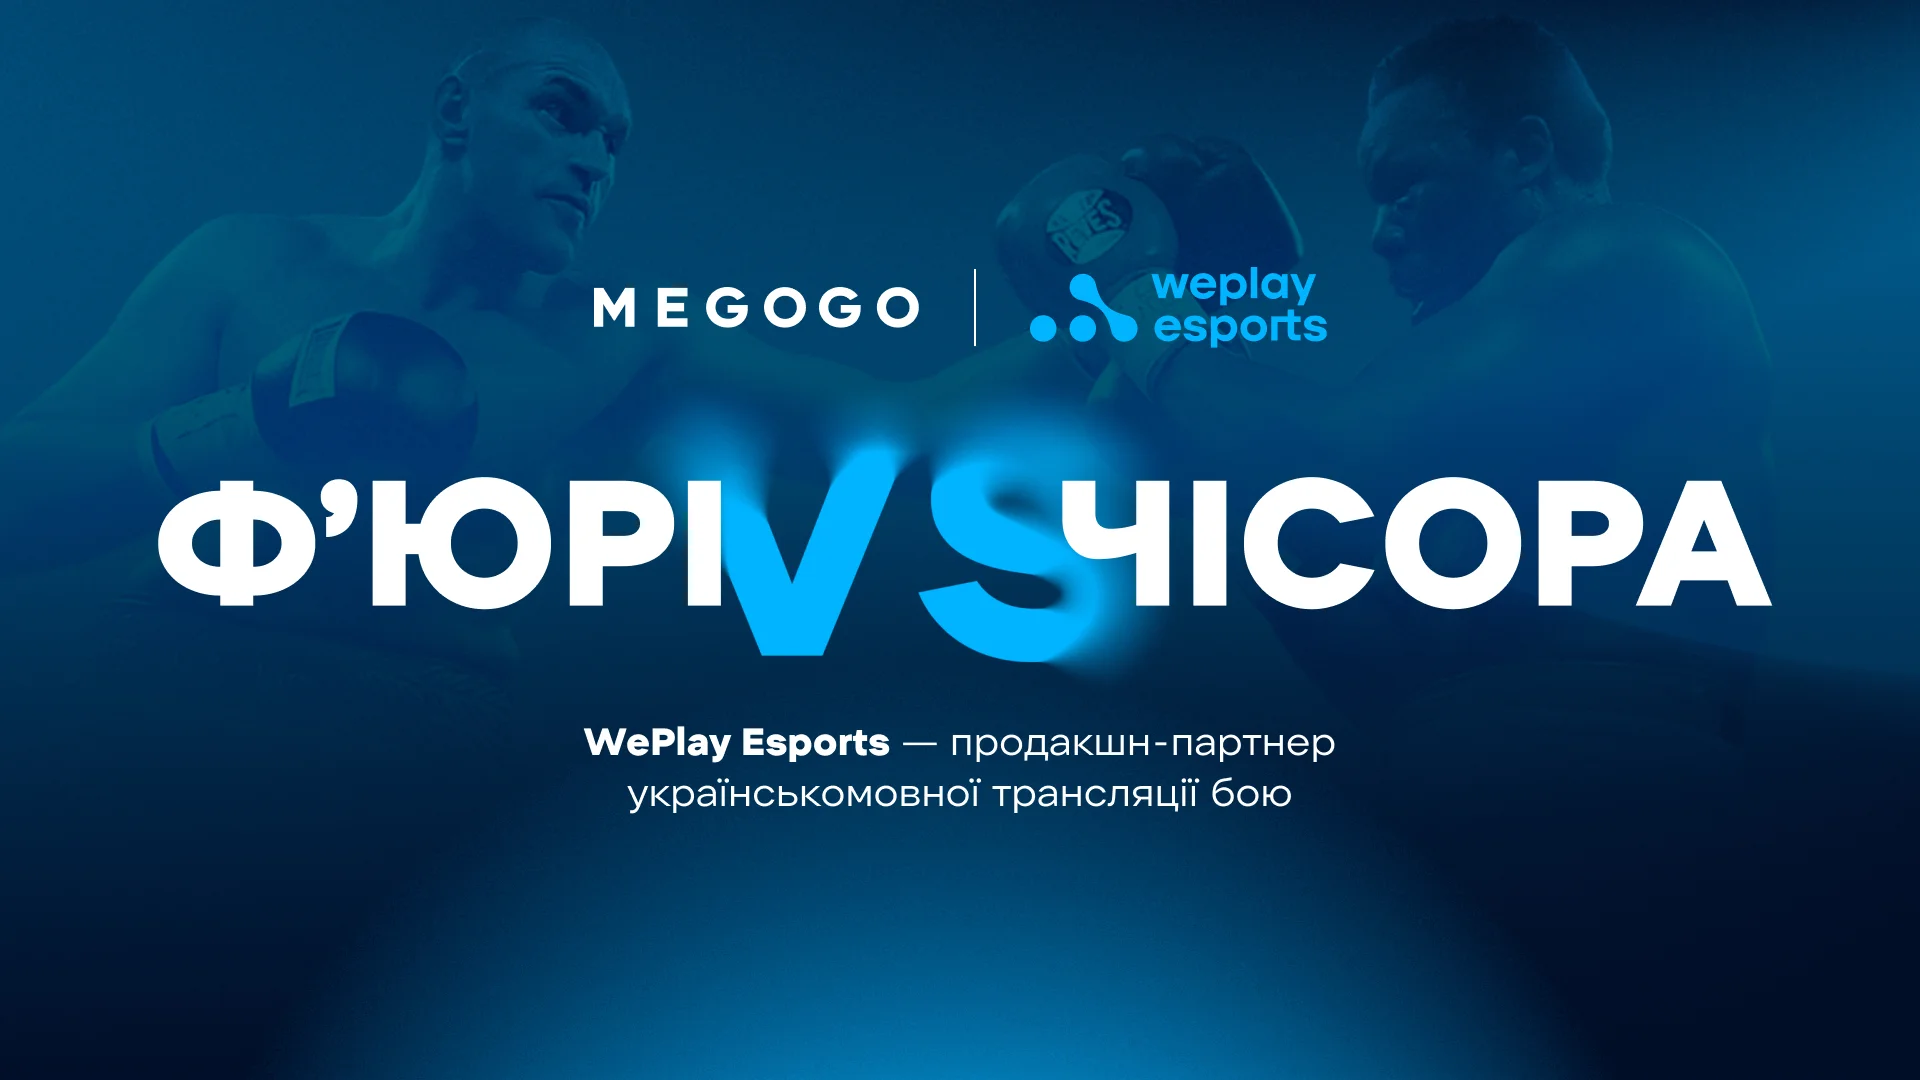 WePlay Esports виступить продакшн-партнером українськомовної трансляції бою Ф’юрі — Чісора на MEGOGO. Зображення: WePlay Holding